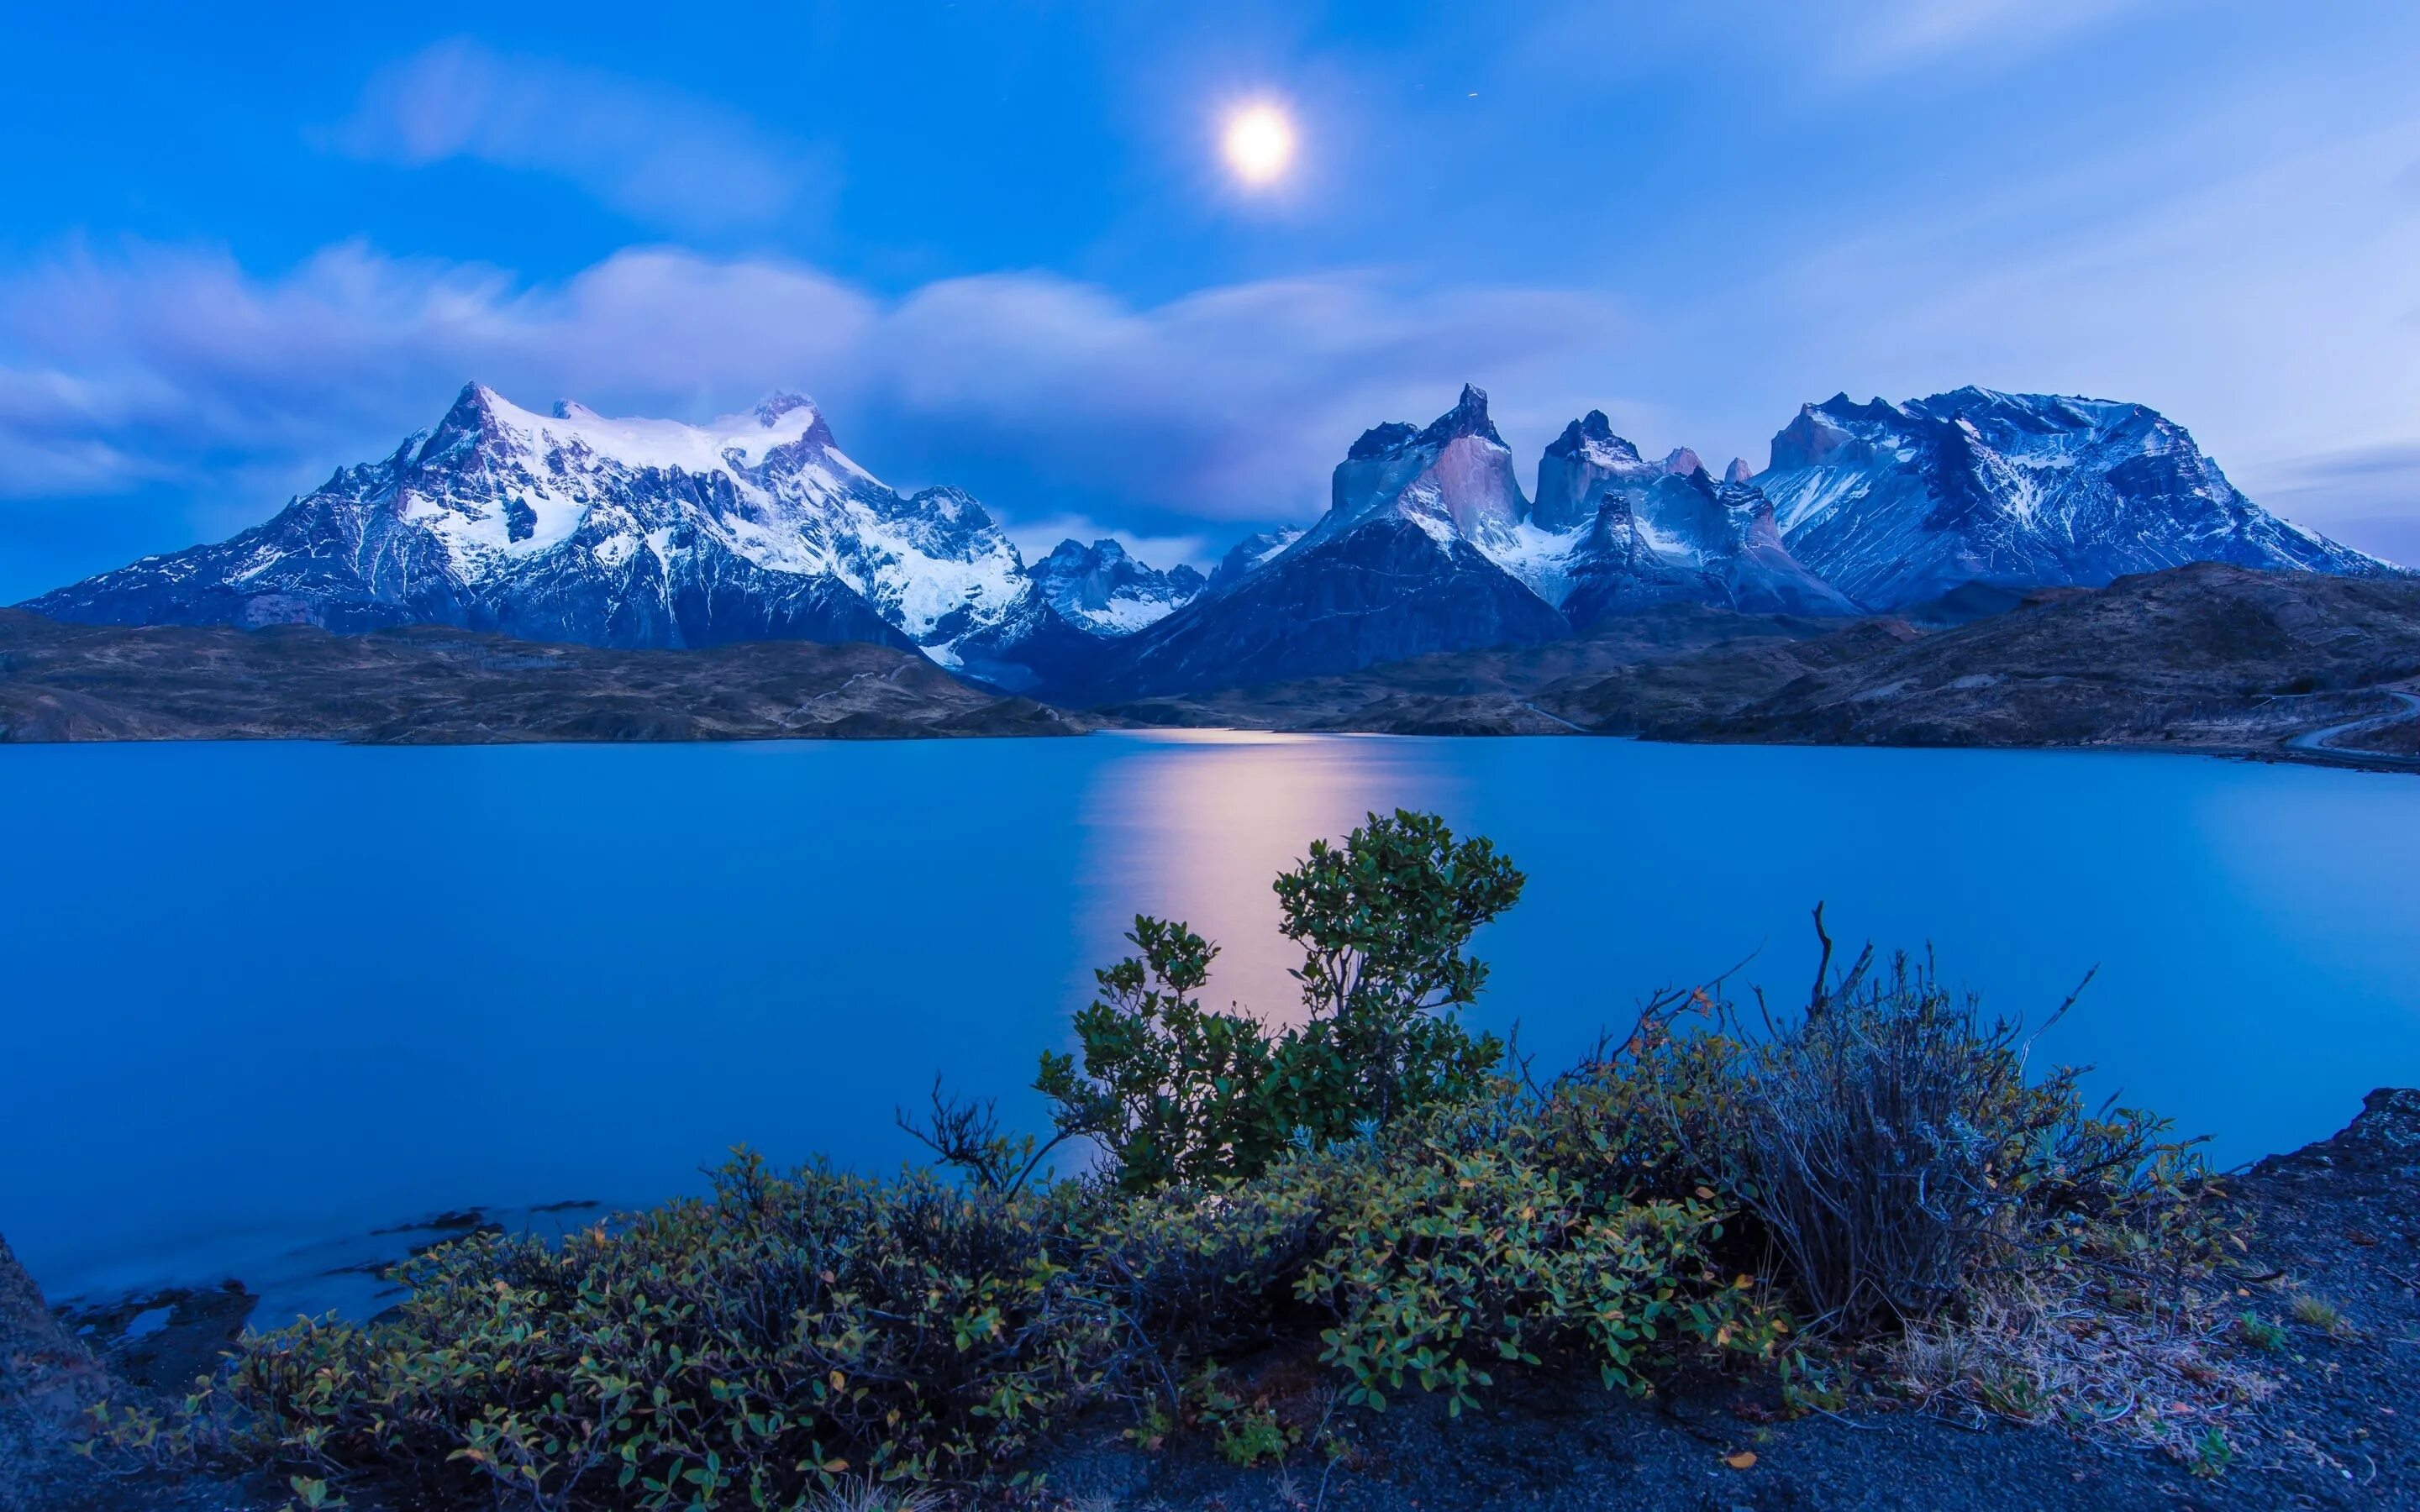 Обои на телефон природа вертикальные высокого качества. Чили горы Патагония. Торрес дель Пайне. Горы Торрес дель Пайне. Национальный парк Торрес-дель-Пейн.